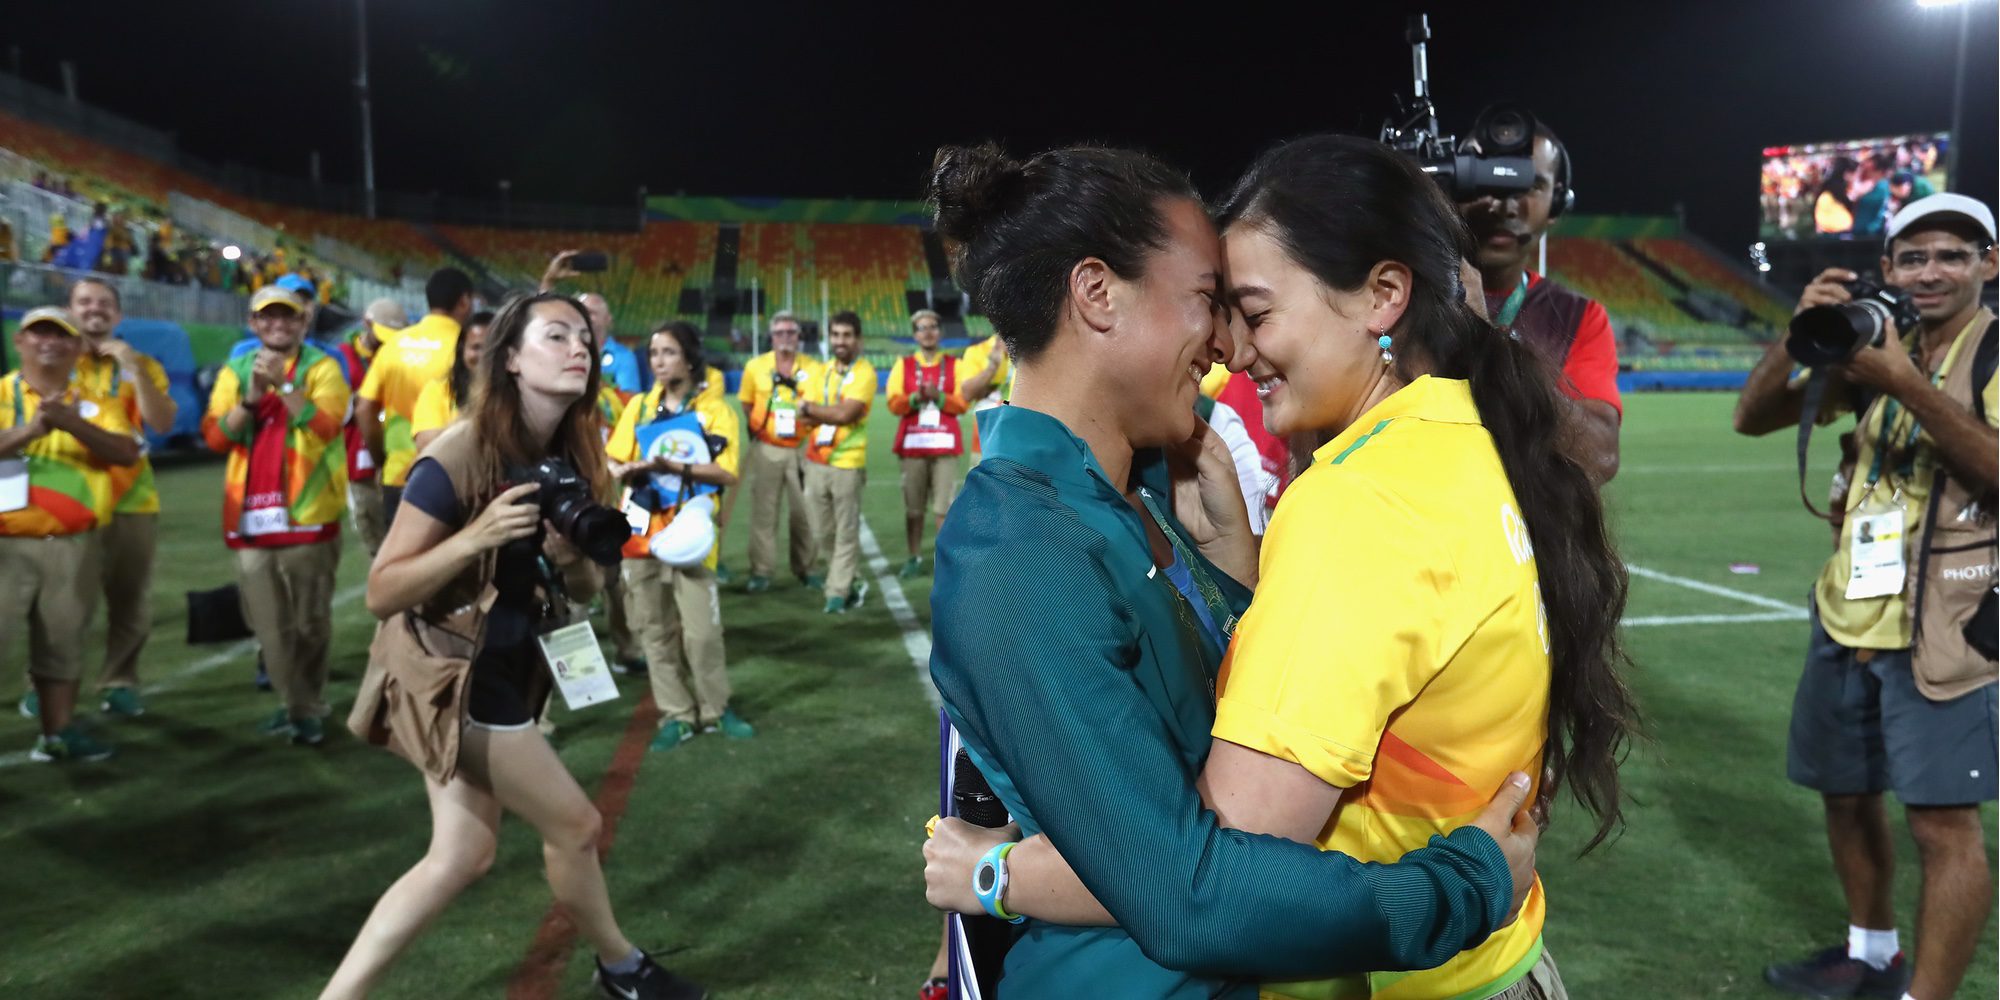 Río 2016: La novia de una jugadora de la selección brasileña de rugby salta al campo para pedirle matrimonio